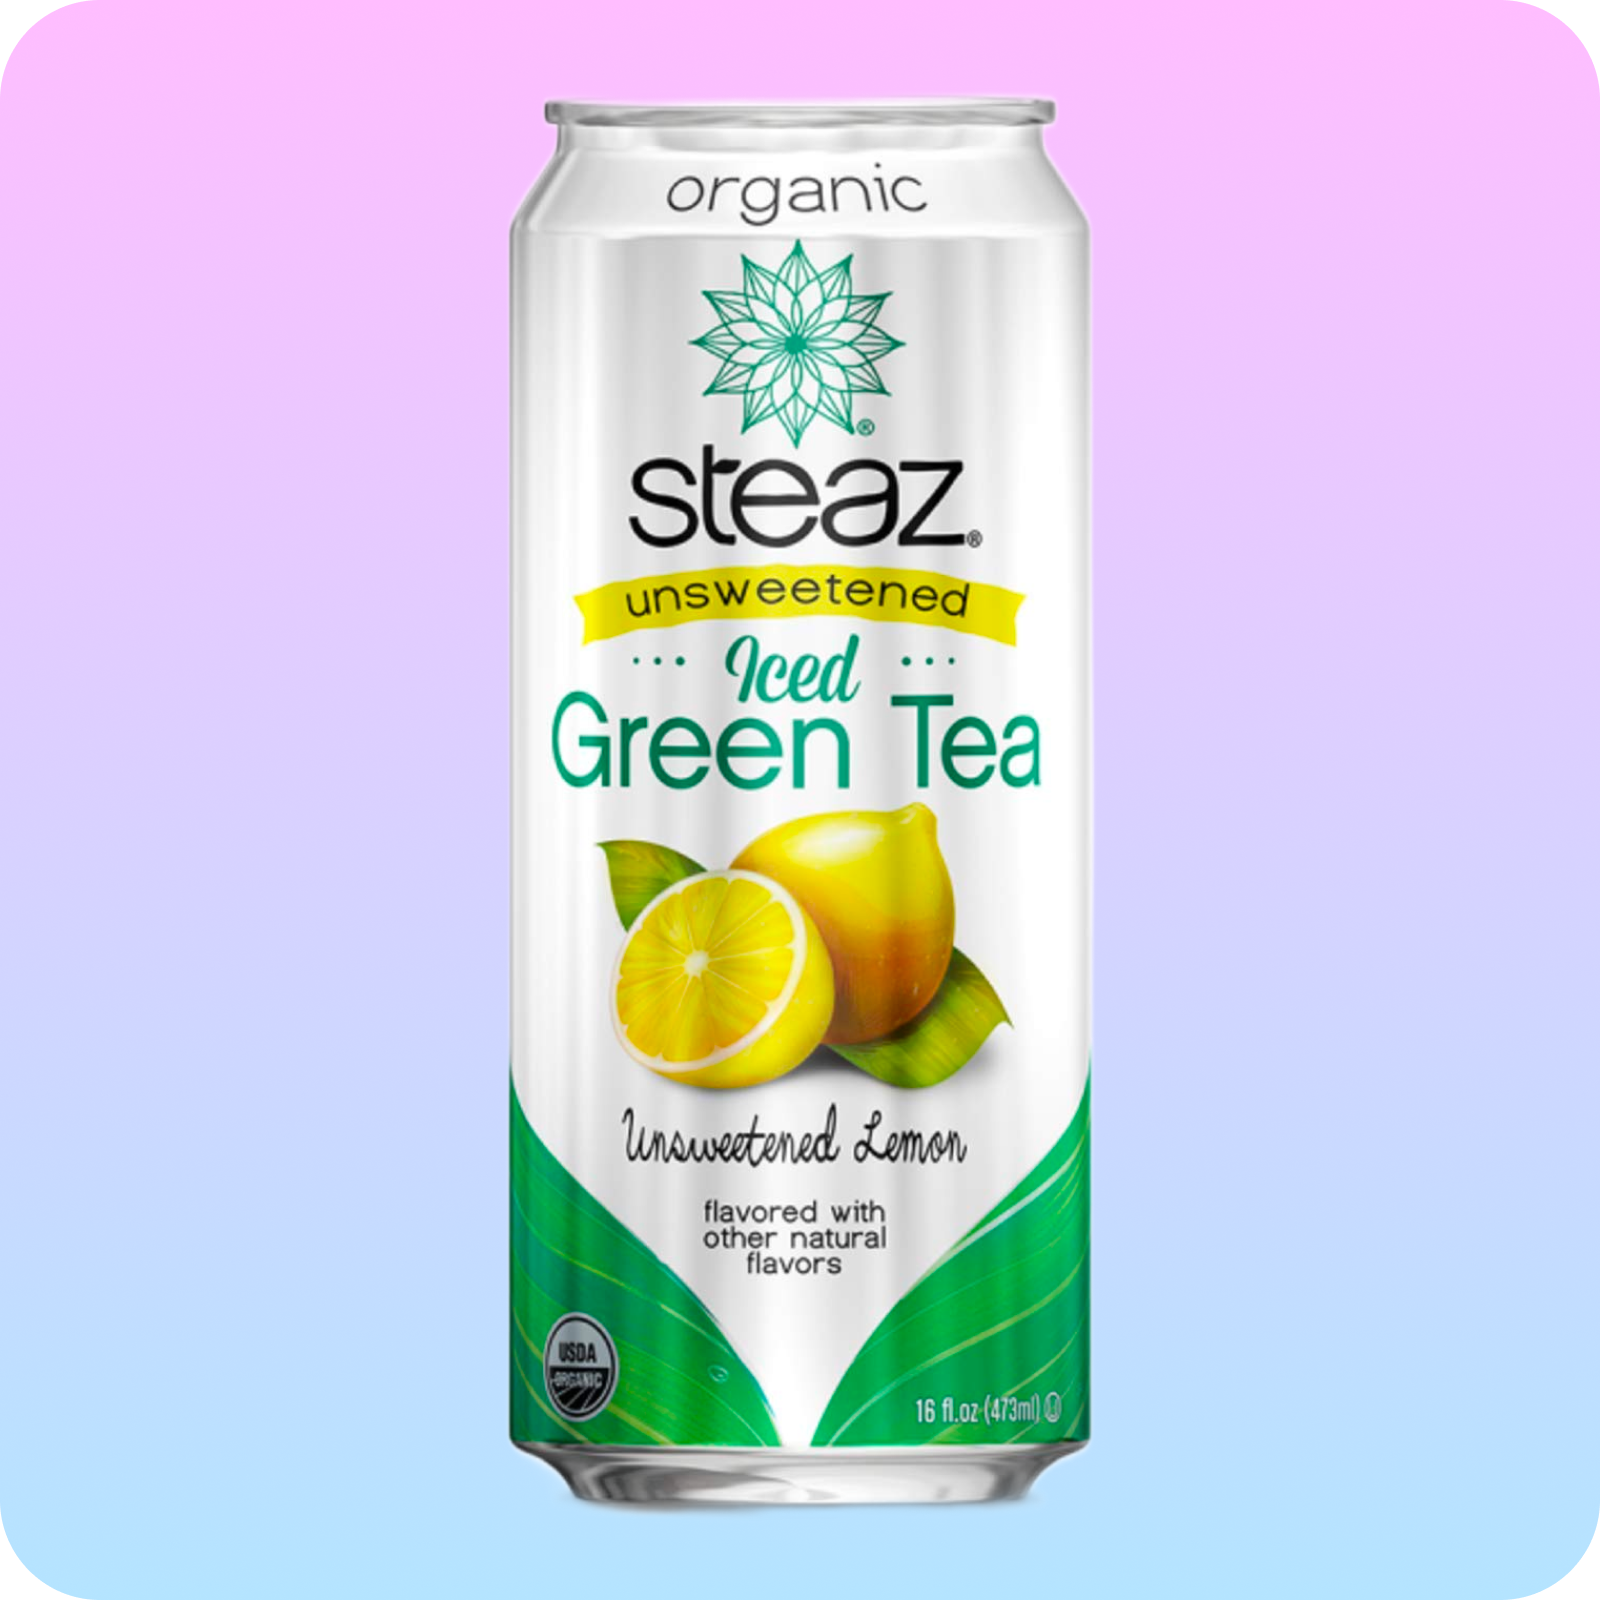 Steaz Unsweetened Iced Green Tea - Unsweetened Lemon